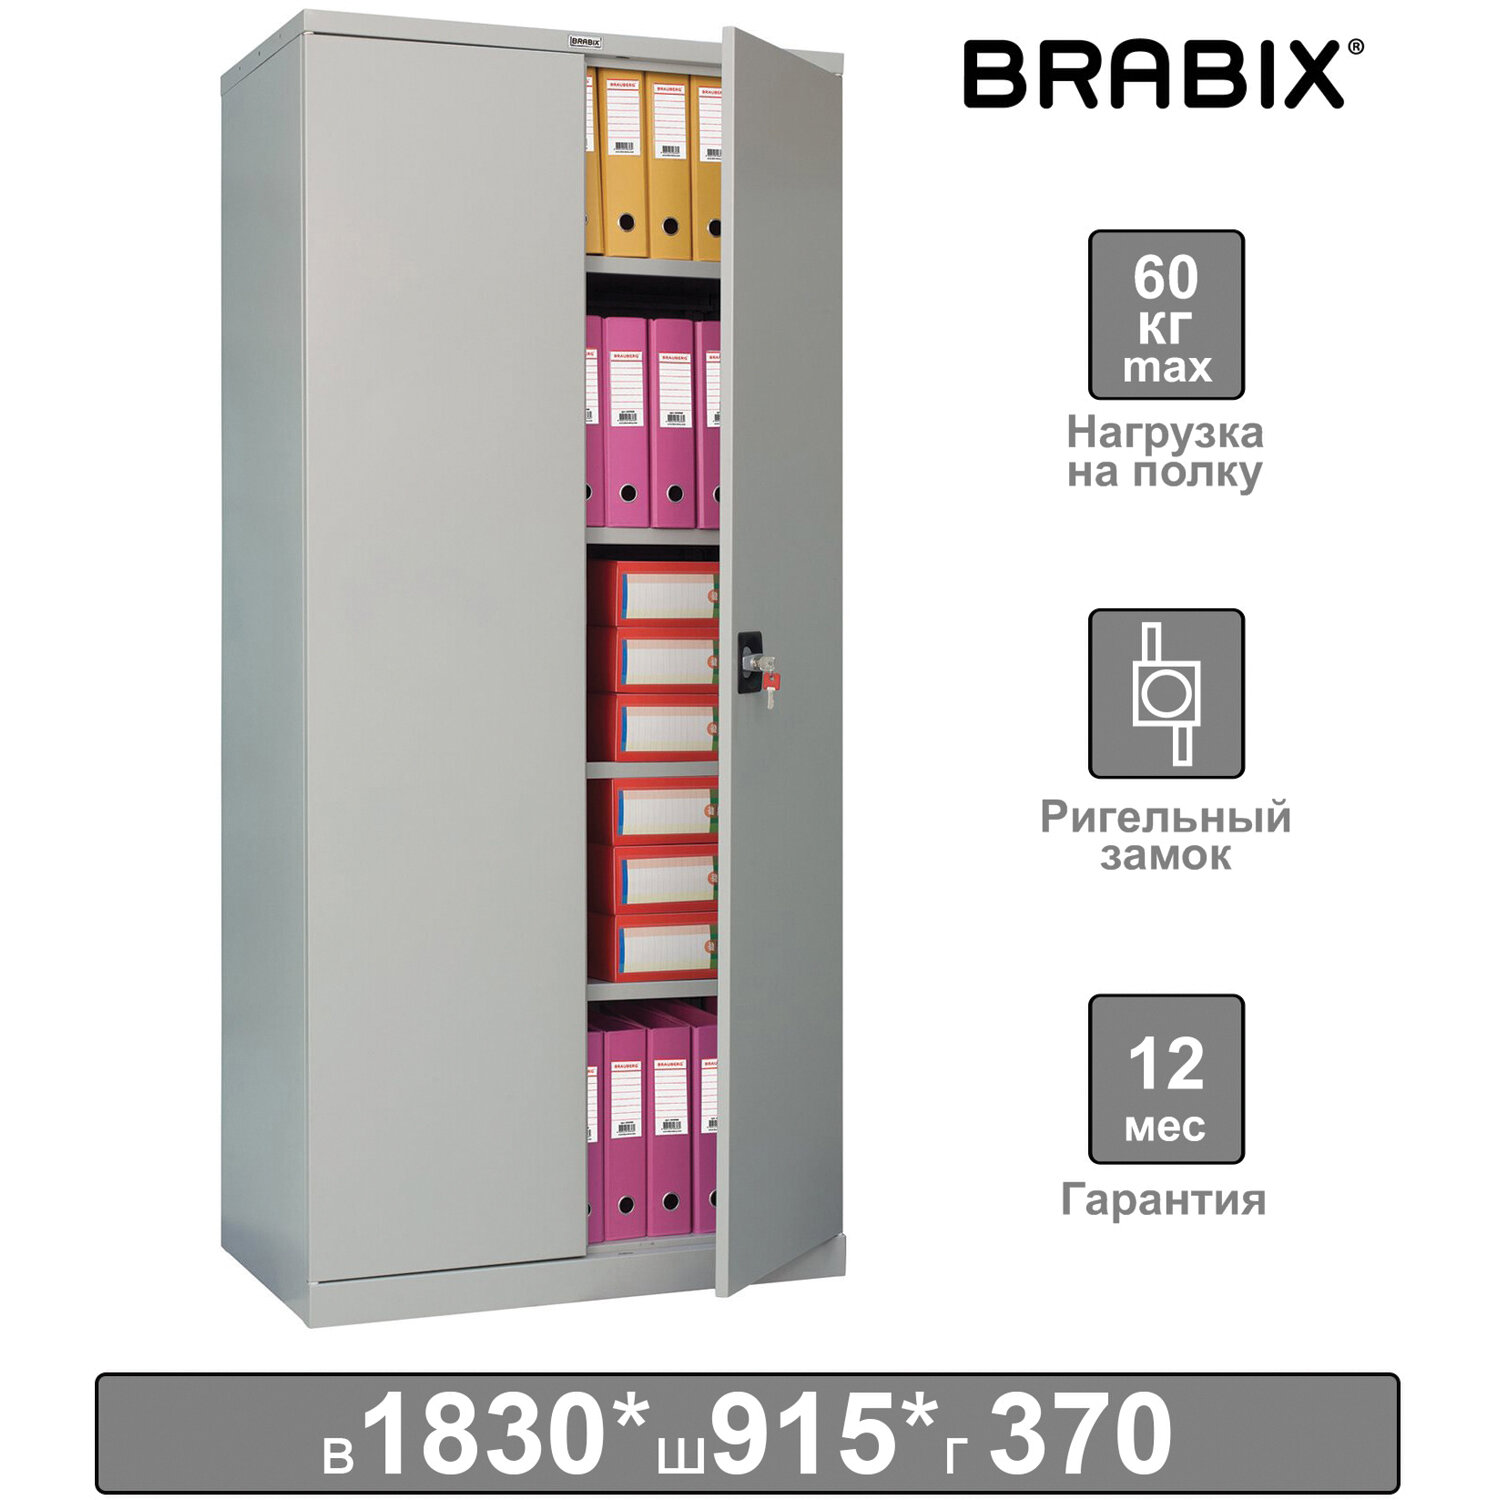 Brabix    BRABIX MK 18/91/37, 1830915370 , 45 , 4 , , 291135, S204BR180102